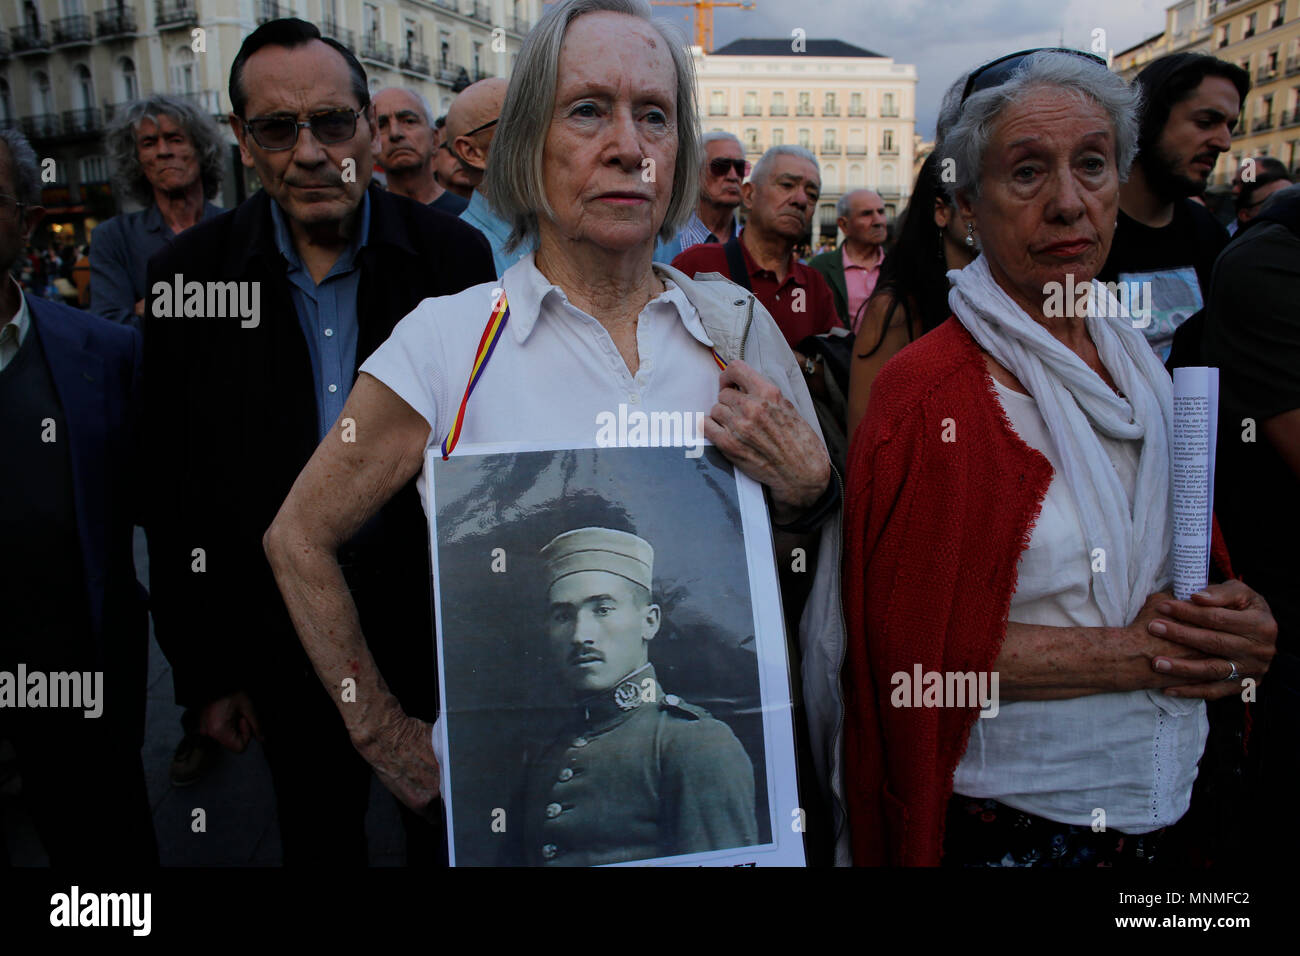 Manifestant l'exercice d'une photographie sur sa poitrine à la Puerta del Sol dans le centre de Madrid, en solidarité avec ceux qui ont disparu par le régime de Franco. Les manifestants se sont rassemblés dans le centre de Madrid dans un rallye du souvenir pour ceux qui ont perdu la vie sous la dictature de Franco. Banque D'Images